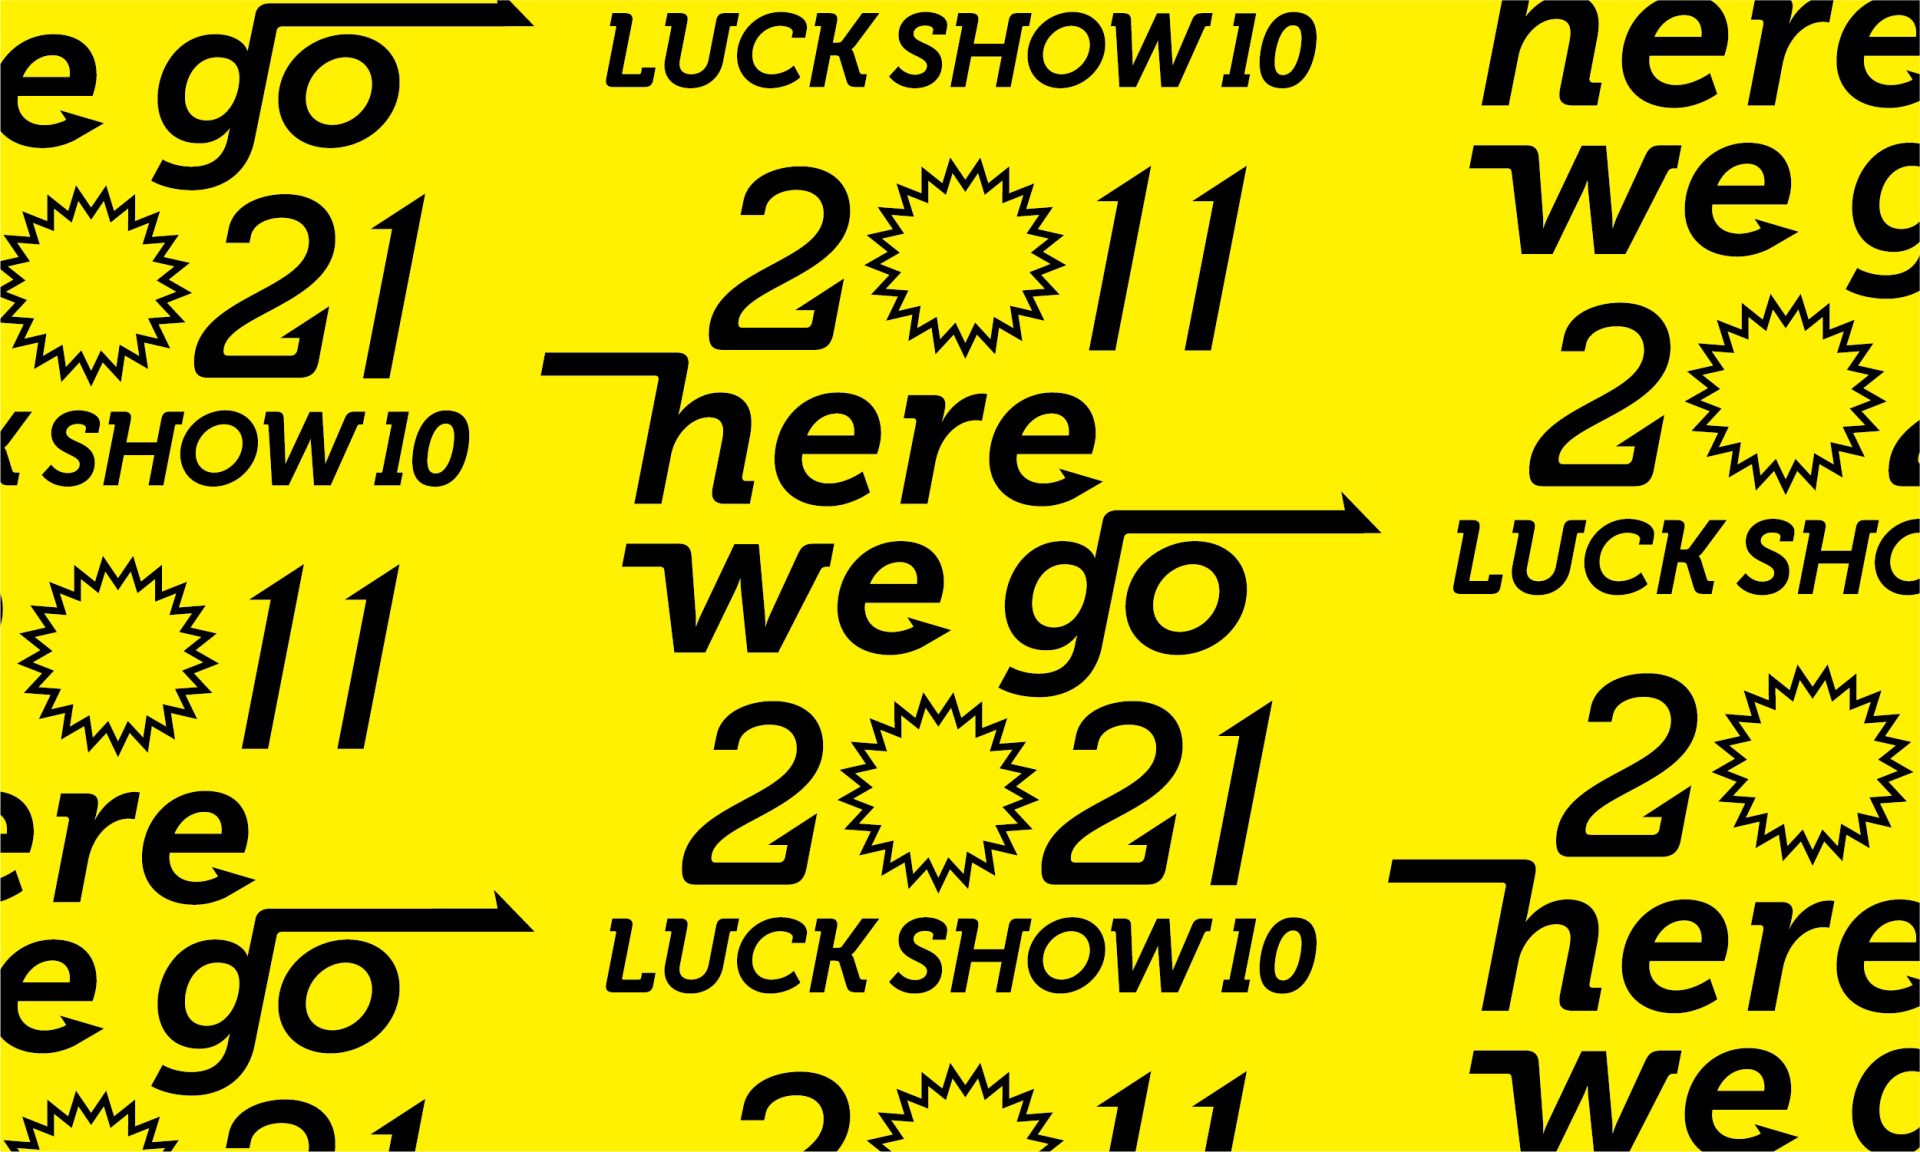 ［ デザイン ア テンション ! ］LUCK SHOW 10年間の軌跡を紹介する展覧会『 LUCK SHOW 10 ー 2011 here we go 2021 →』を、12月10日（金）から青森市「ギャラリー クレイドル」にて開催します。